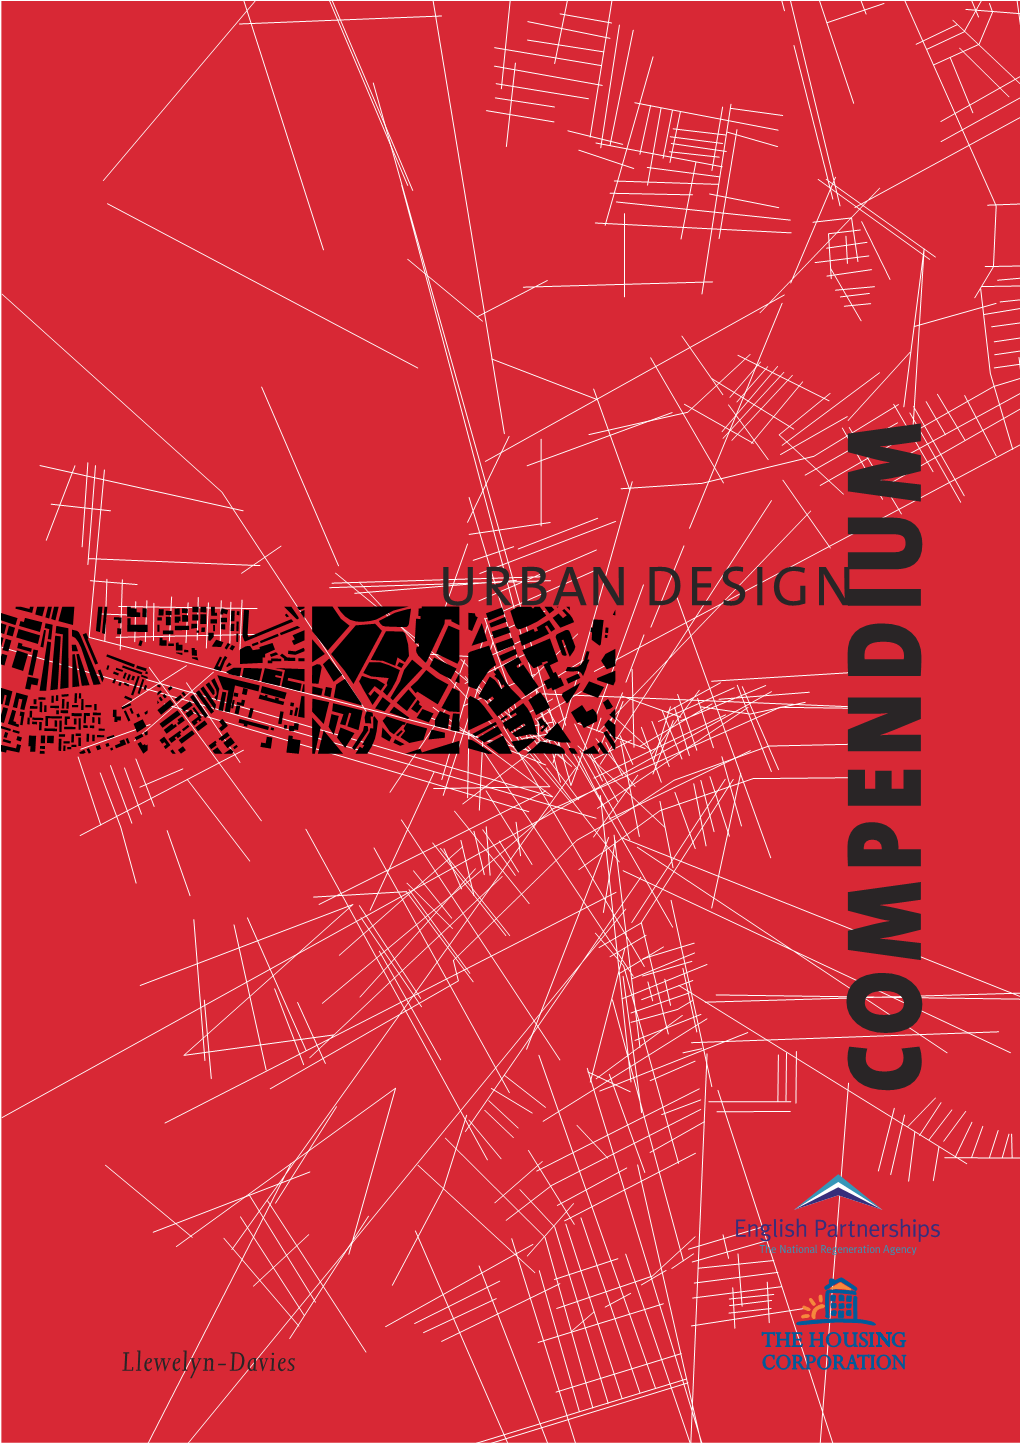 Urban Design Compendium 1 and the New Publication of Urban Design Compendium 2